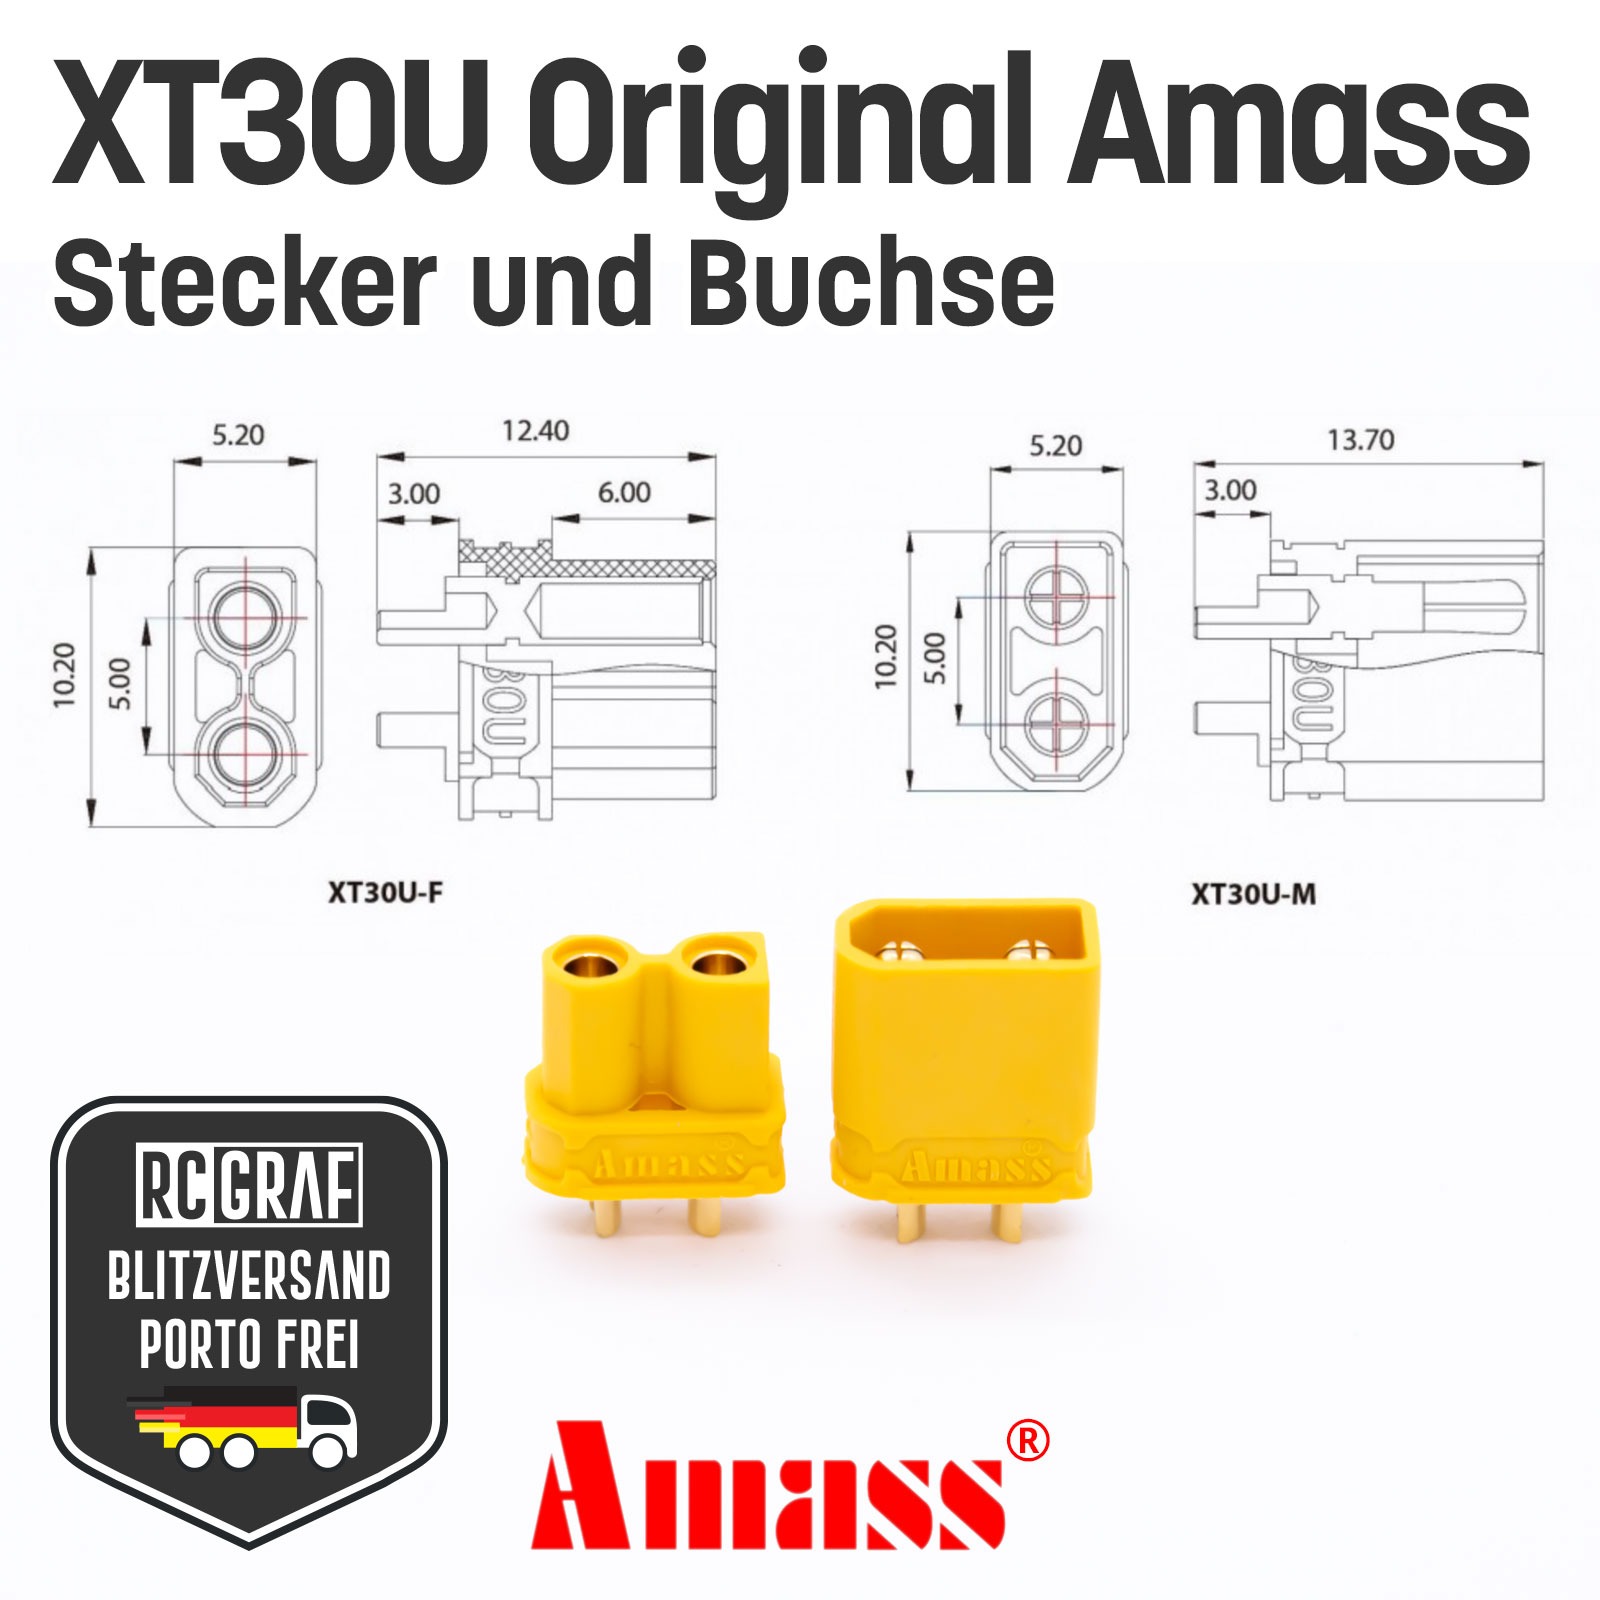 20 Paare XT30U Original Amass 3